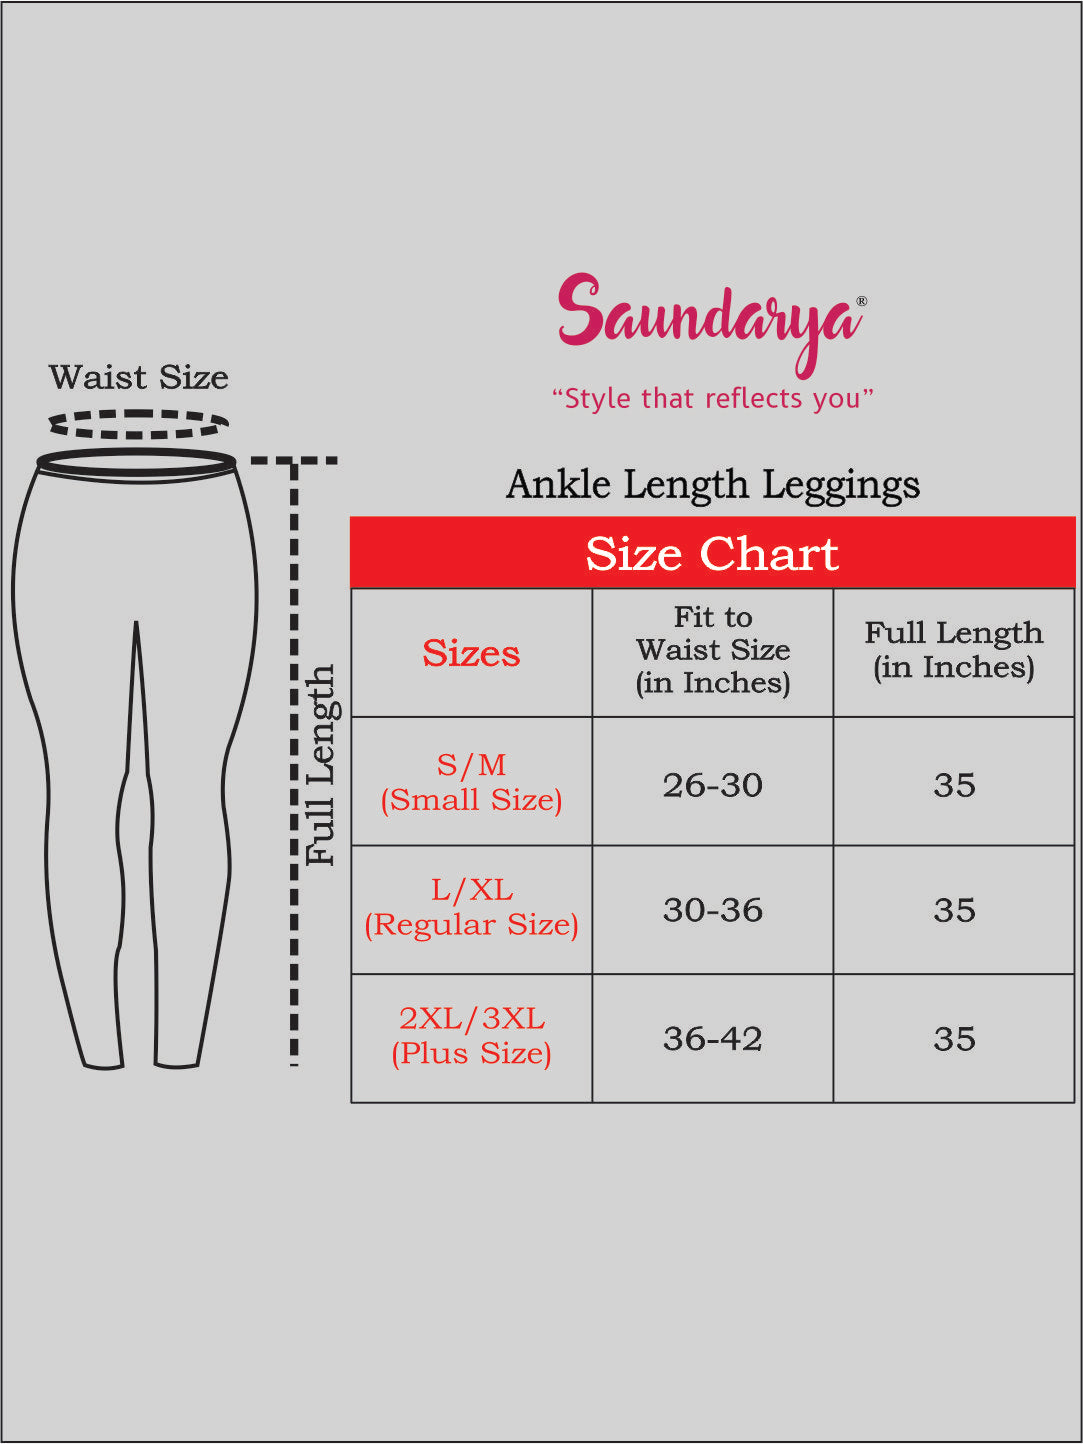 Saundarya Women's White Ankle Length Leggings Cotton